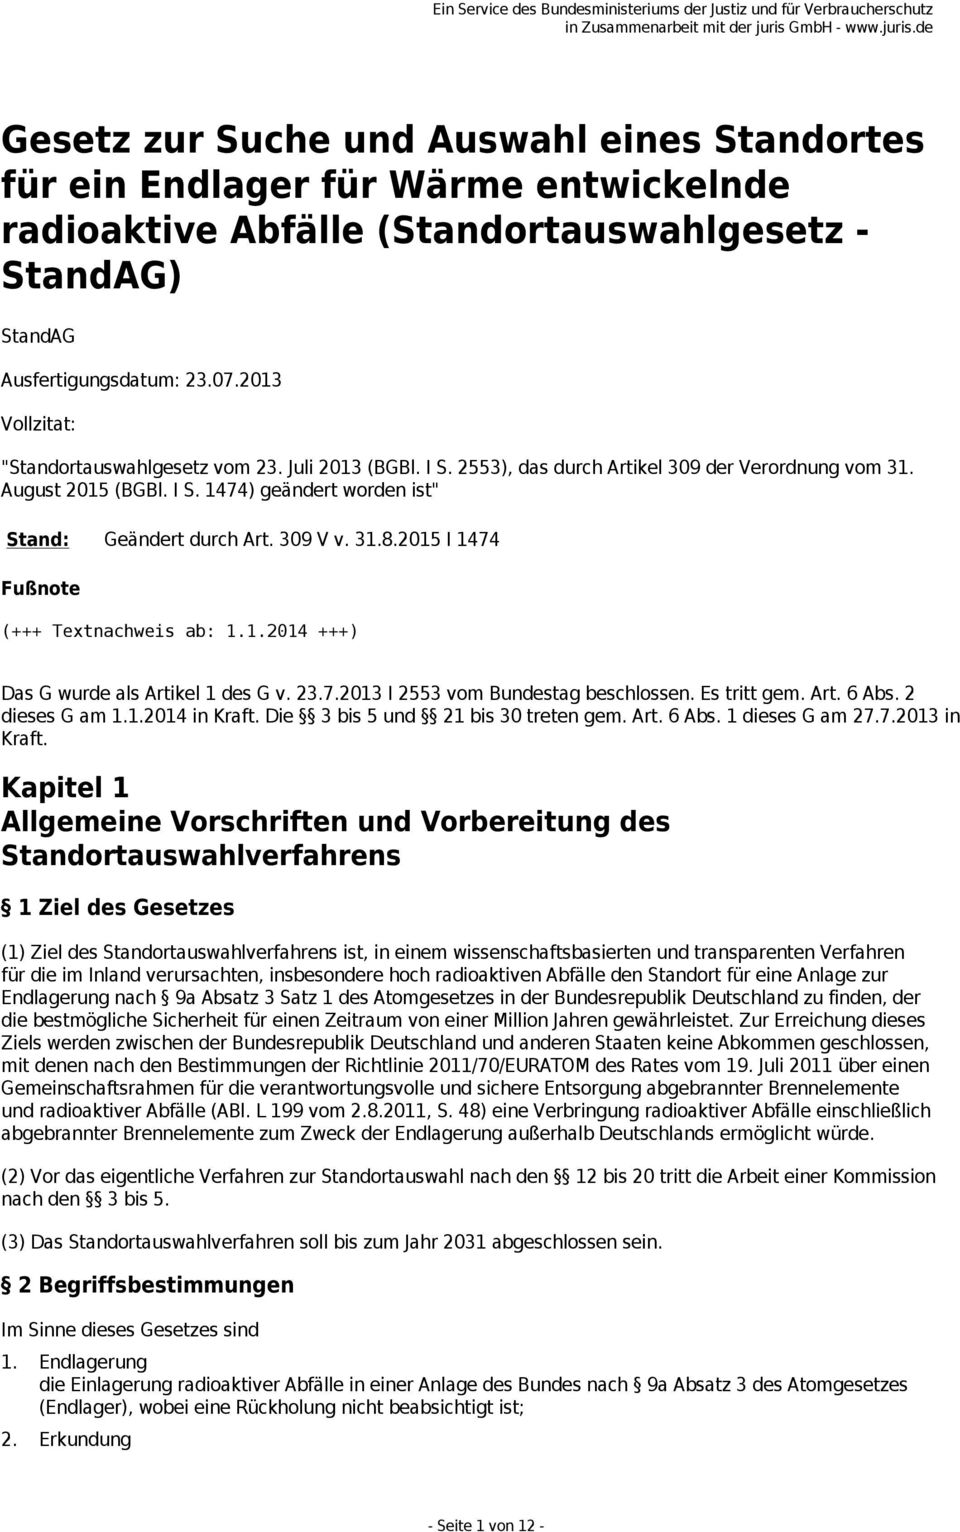 309 V v. 31.8.2015 I 1474 Fußnote (+++ Textnachweis ab: 1.1.2014 +++) Das G wurde als Artikel 1 des G v. 23.7.2013 I 2553 vom Bundestag beschlossen. Es tritt gem. Art. 6 Abs. 2 dieses G am 1.1.2014 in Kraft.